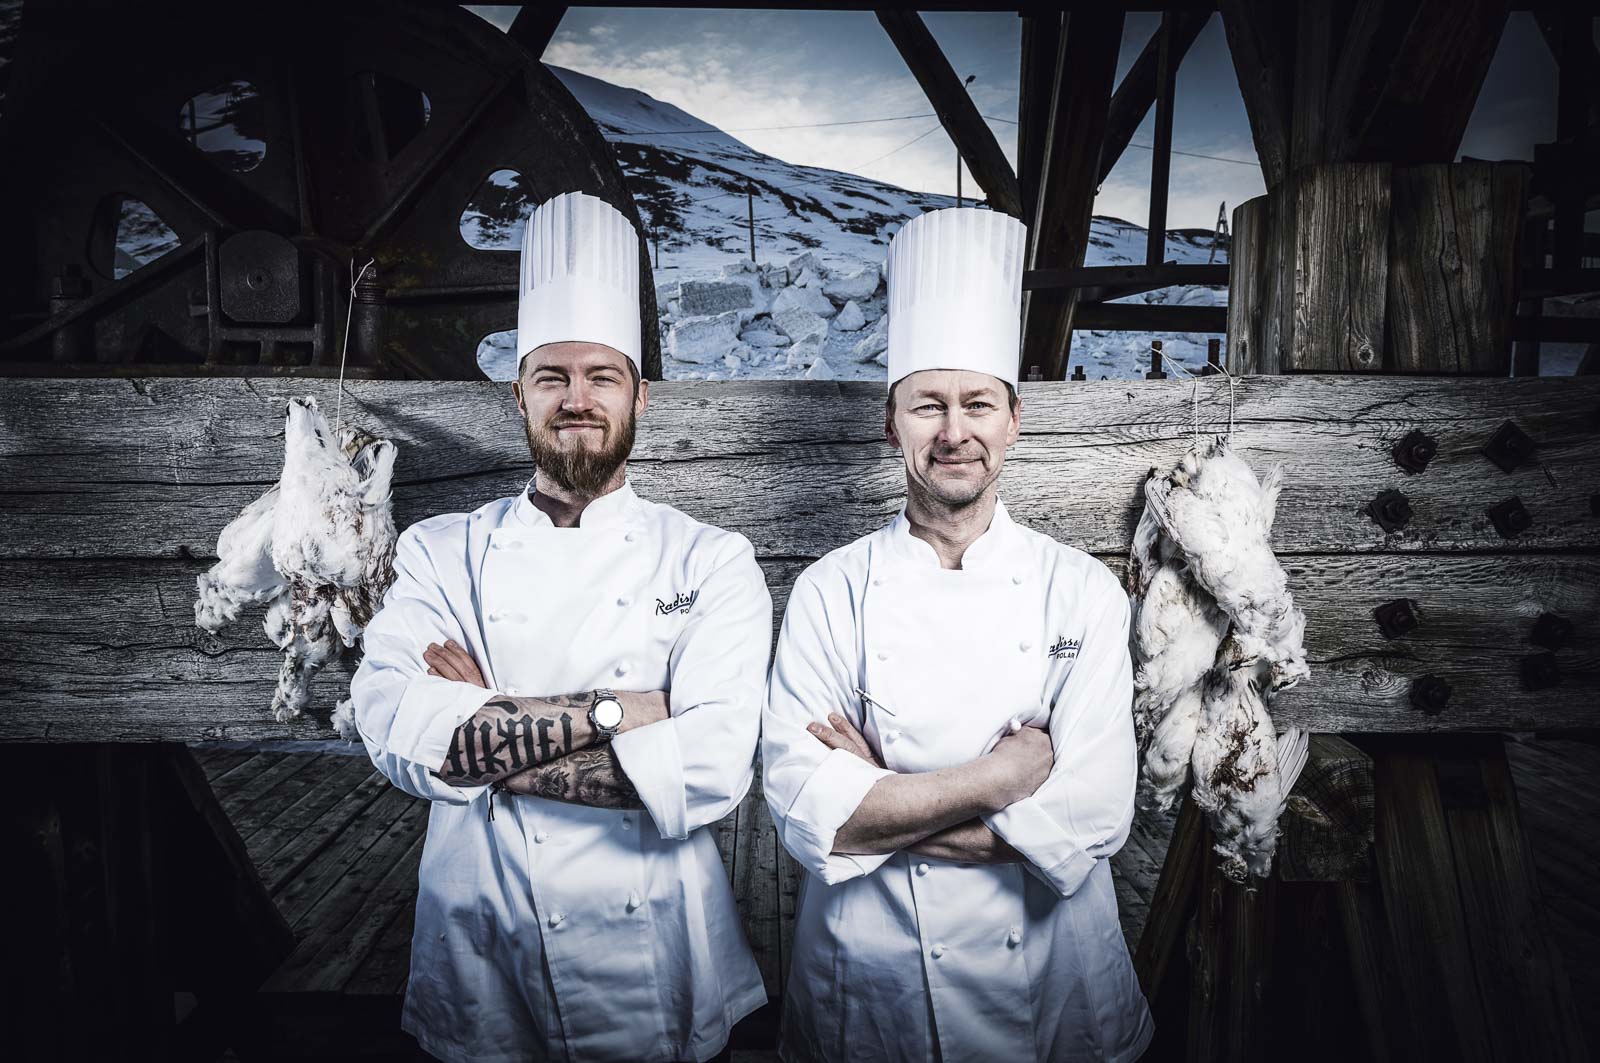 Nansen restaurant's chefs